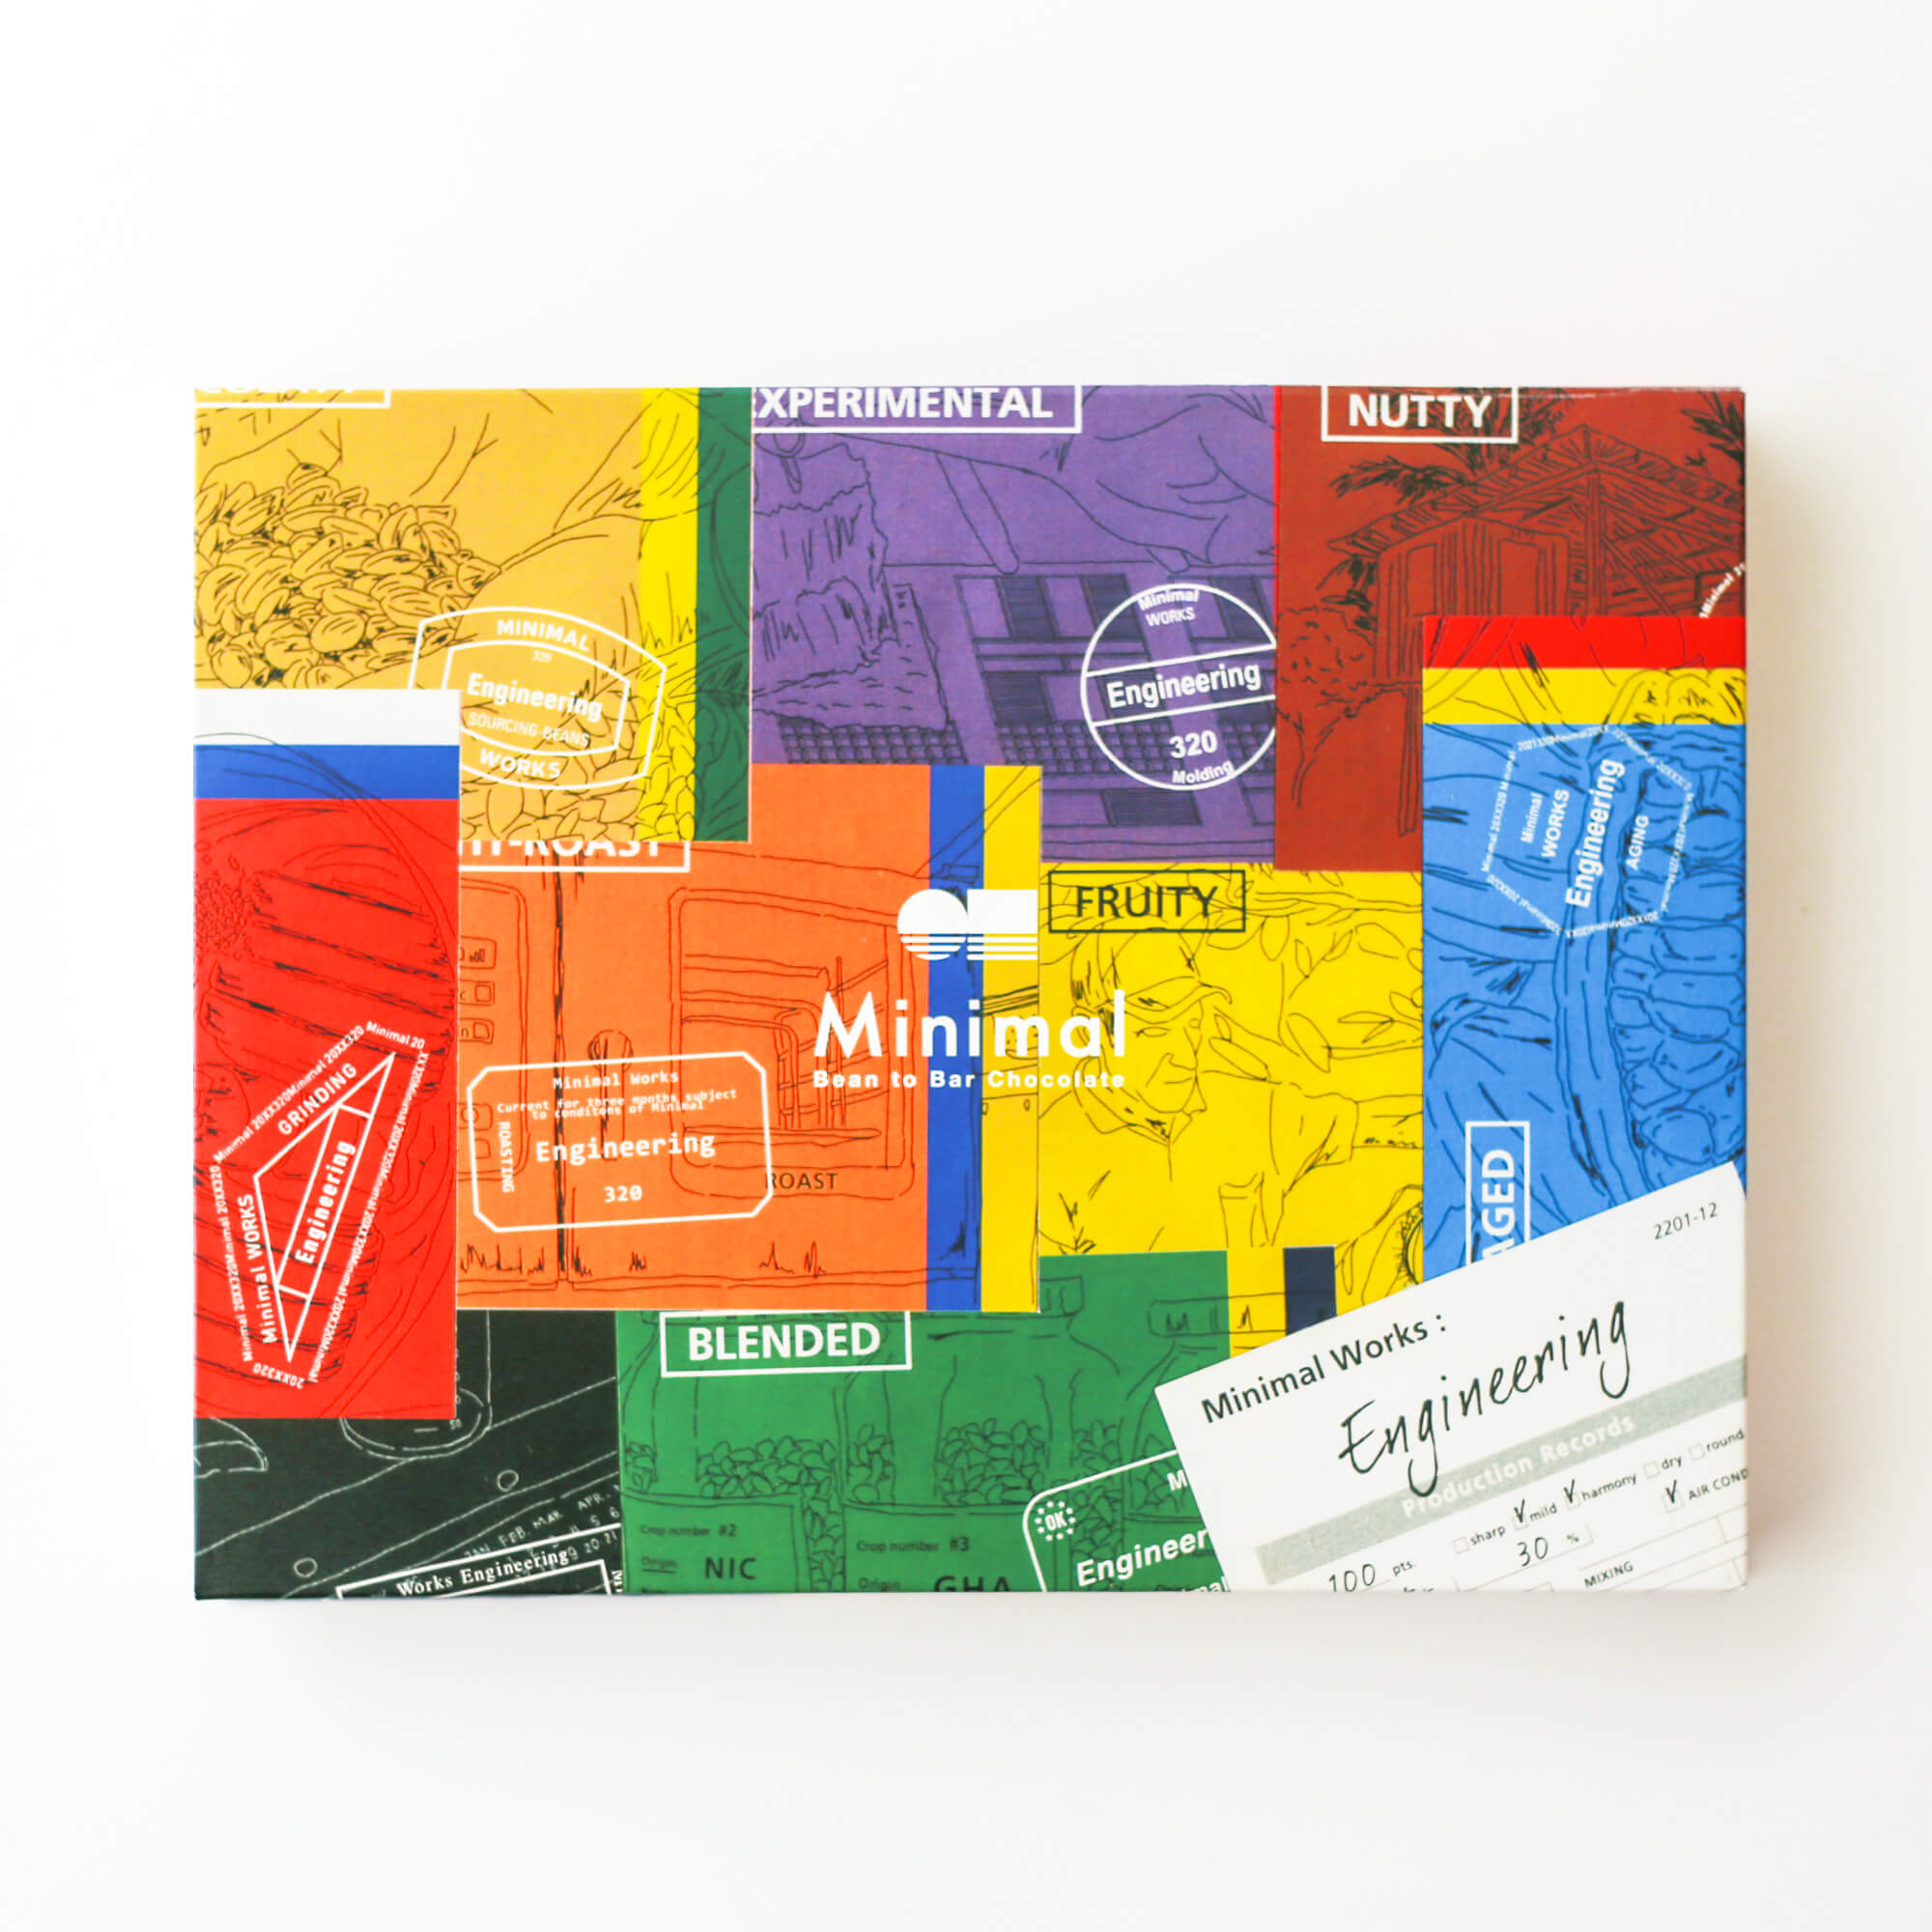 9種類のチョコレートをマニアックに食べ比べ！職人たちの作品集(Works)であり、ギフトにもおすすめのアソートセット。限定商品「Minimal Works : Engineering」1/20発売のサブ画像2